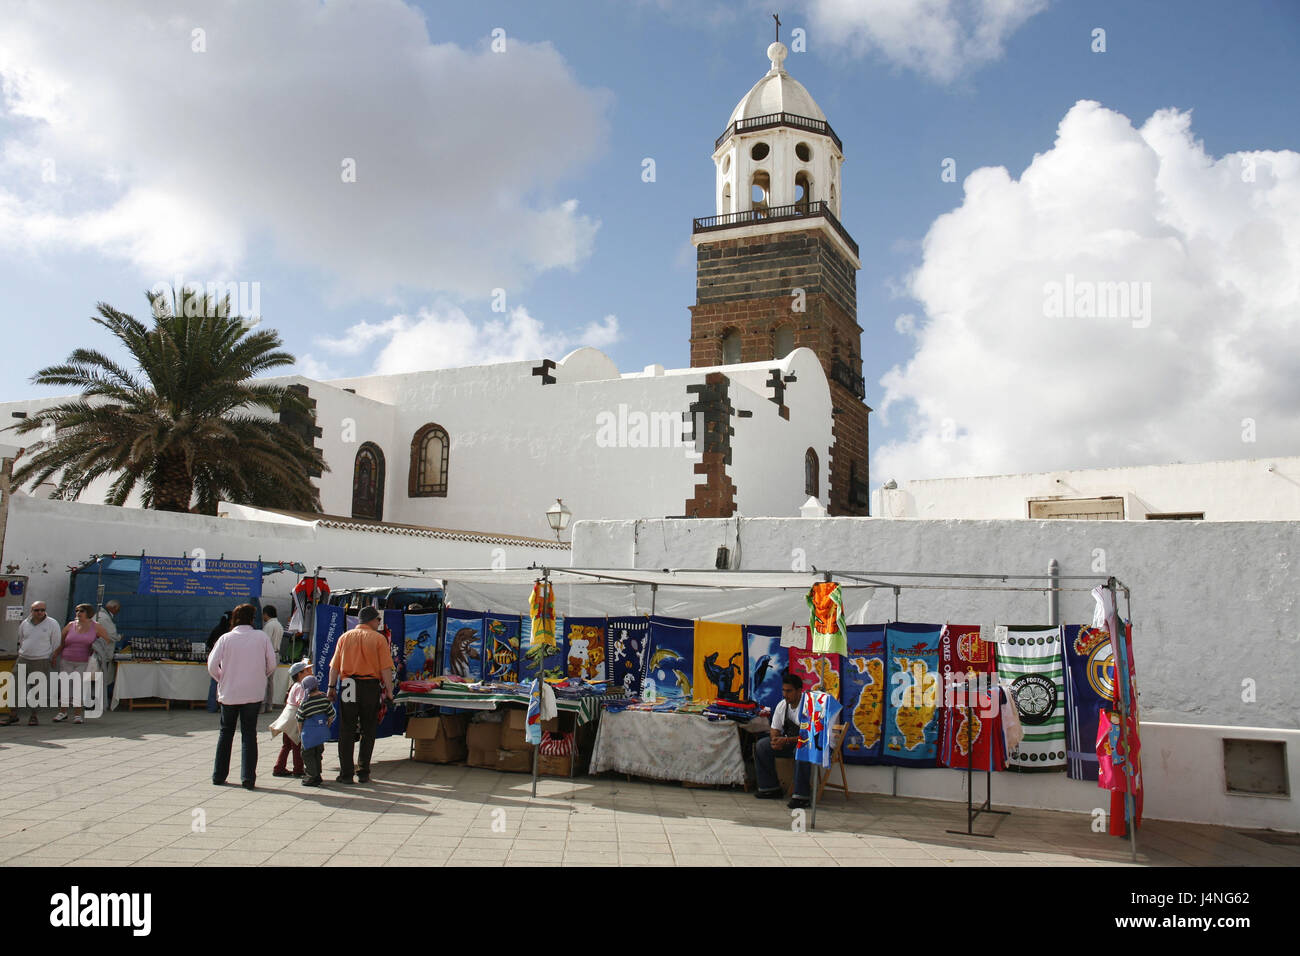 Spagna, Lanzarote, Teguise, Iglesia Nuestra Señora de Guadalupe, dettaglio, Steeple, mercato di domenica, Foto Stock